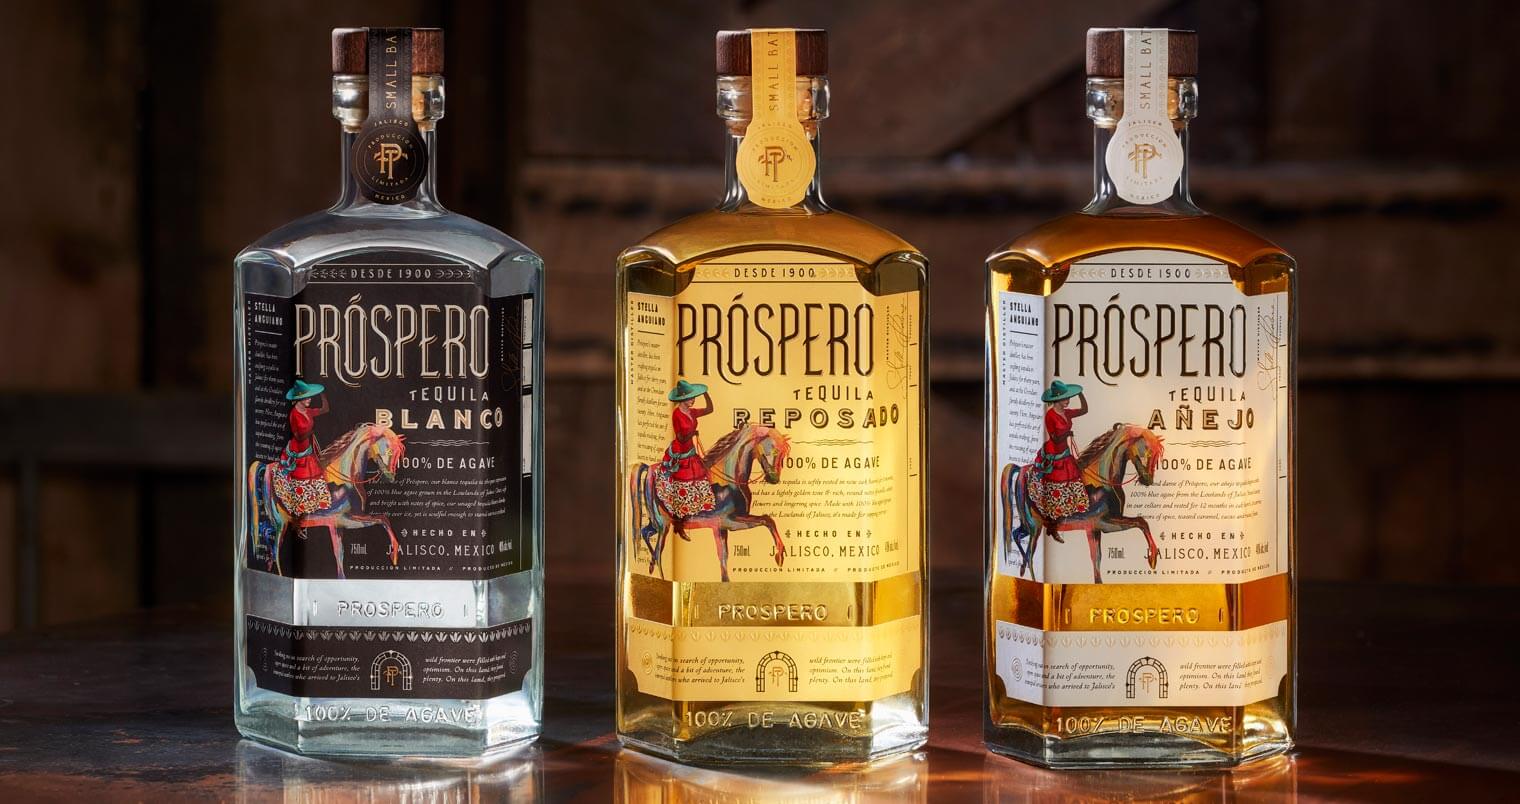 Próspero Tequila bottle varieties, featured image